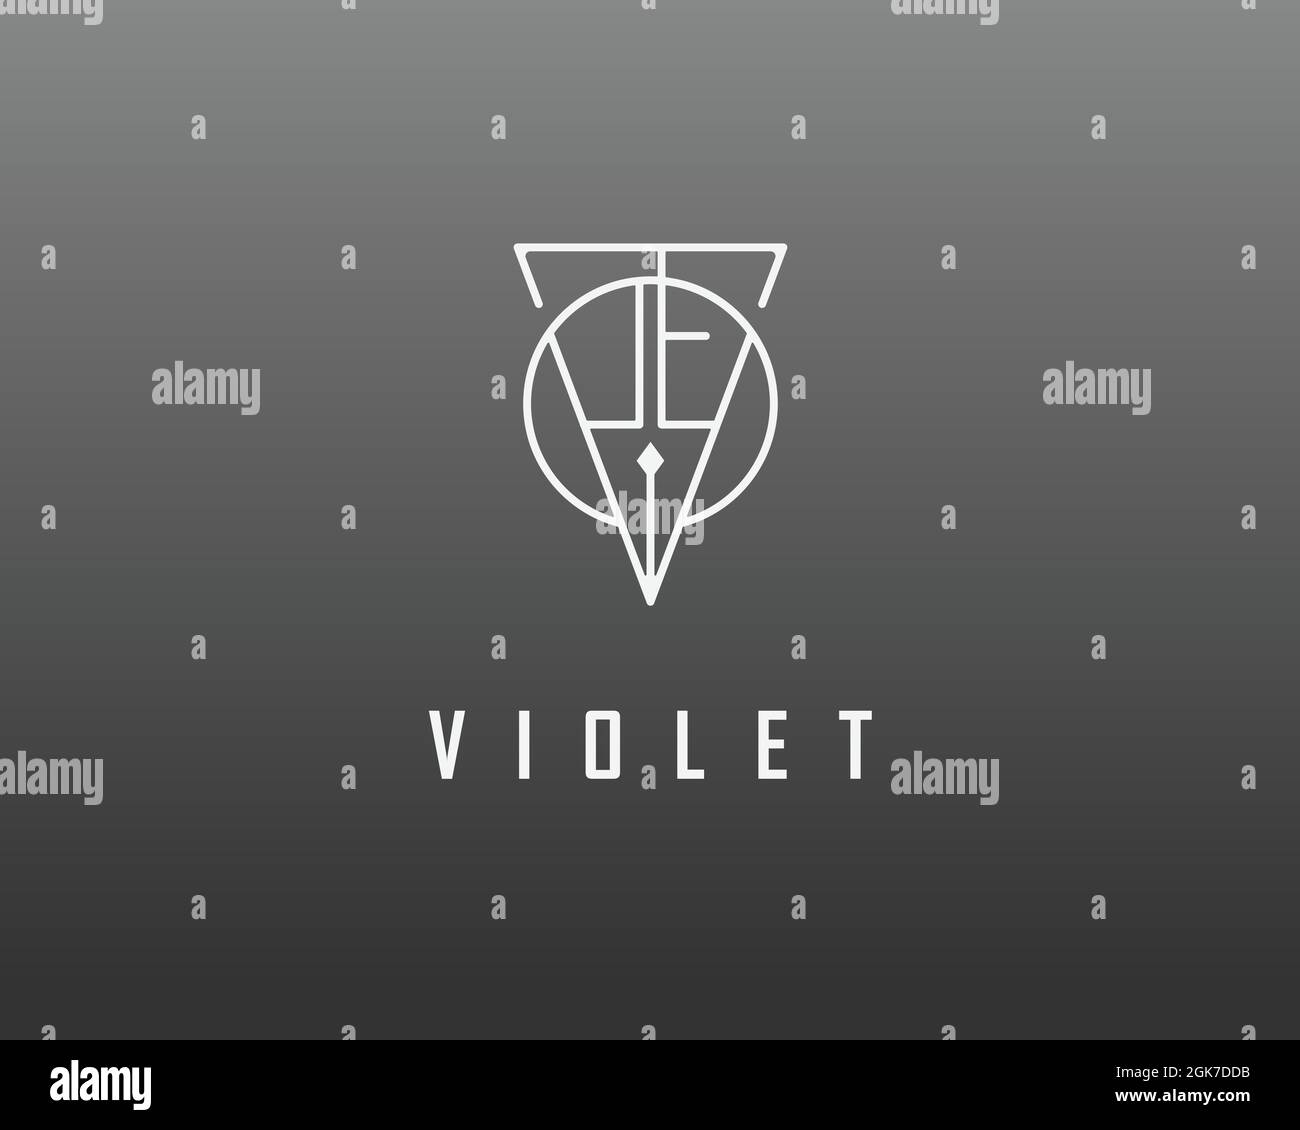 logo name Violet usable logo design for private logo, business name card web icon, social media icon Stock Vector